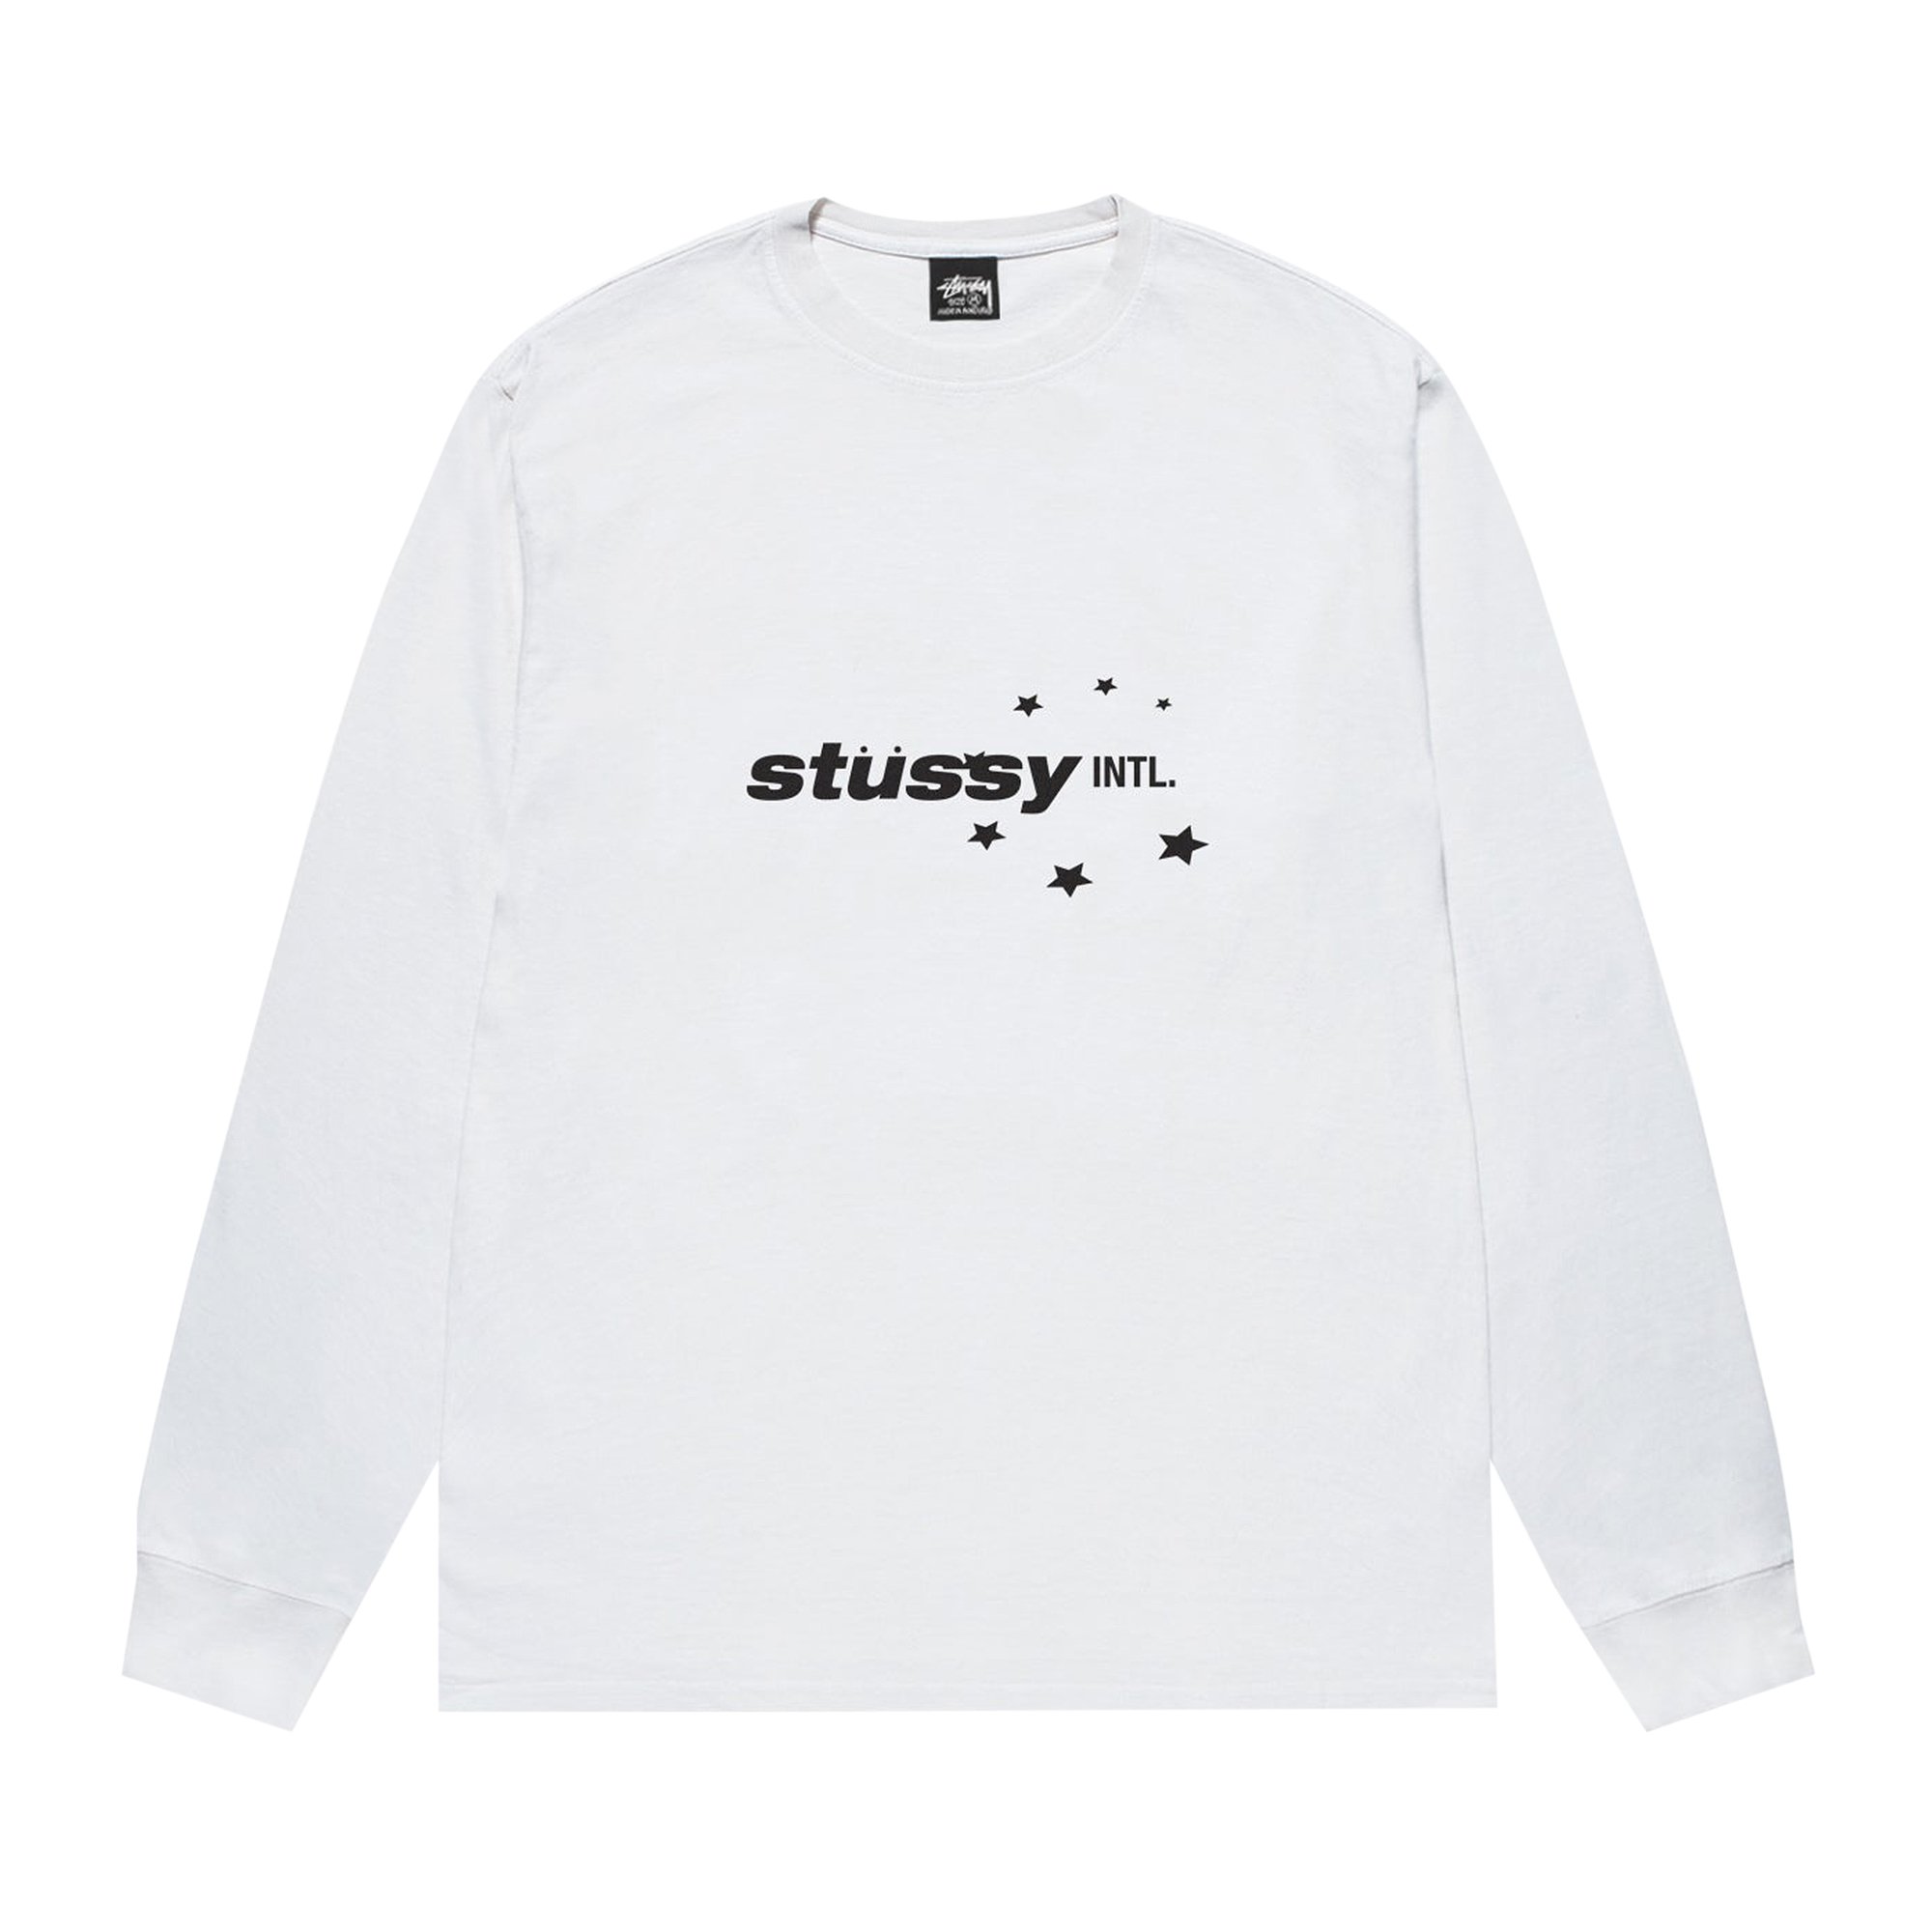 Buy Stussy Star Sport Long-Sleeve Tee 'White' - 1995044 WHIT | GOAT